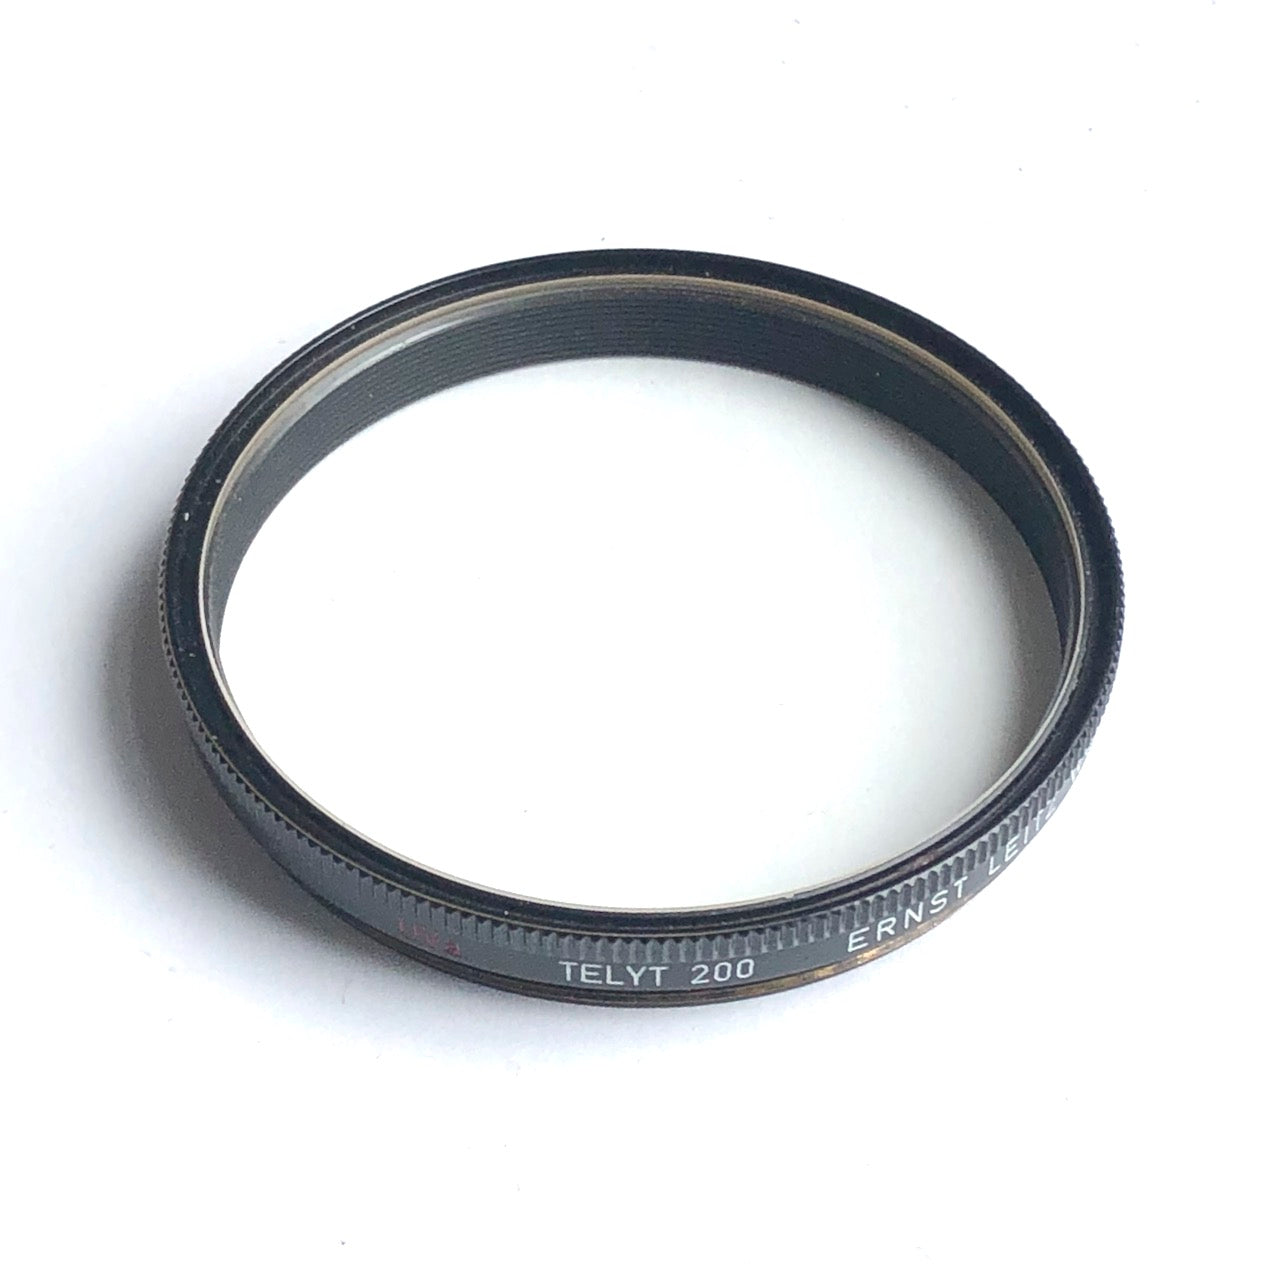 Leitz UVa filter for 200mm Telyt